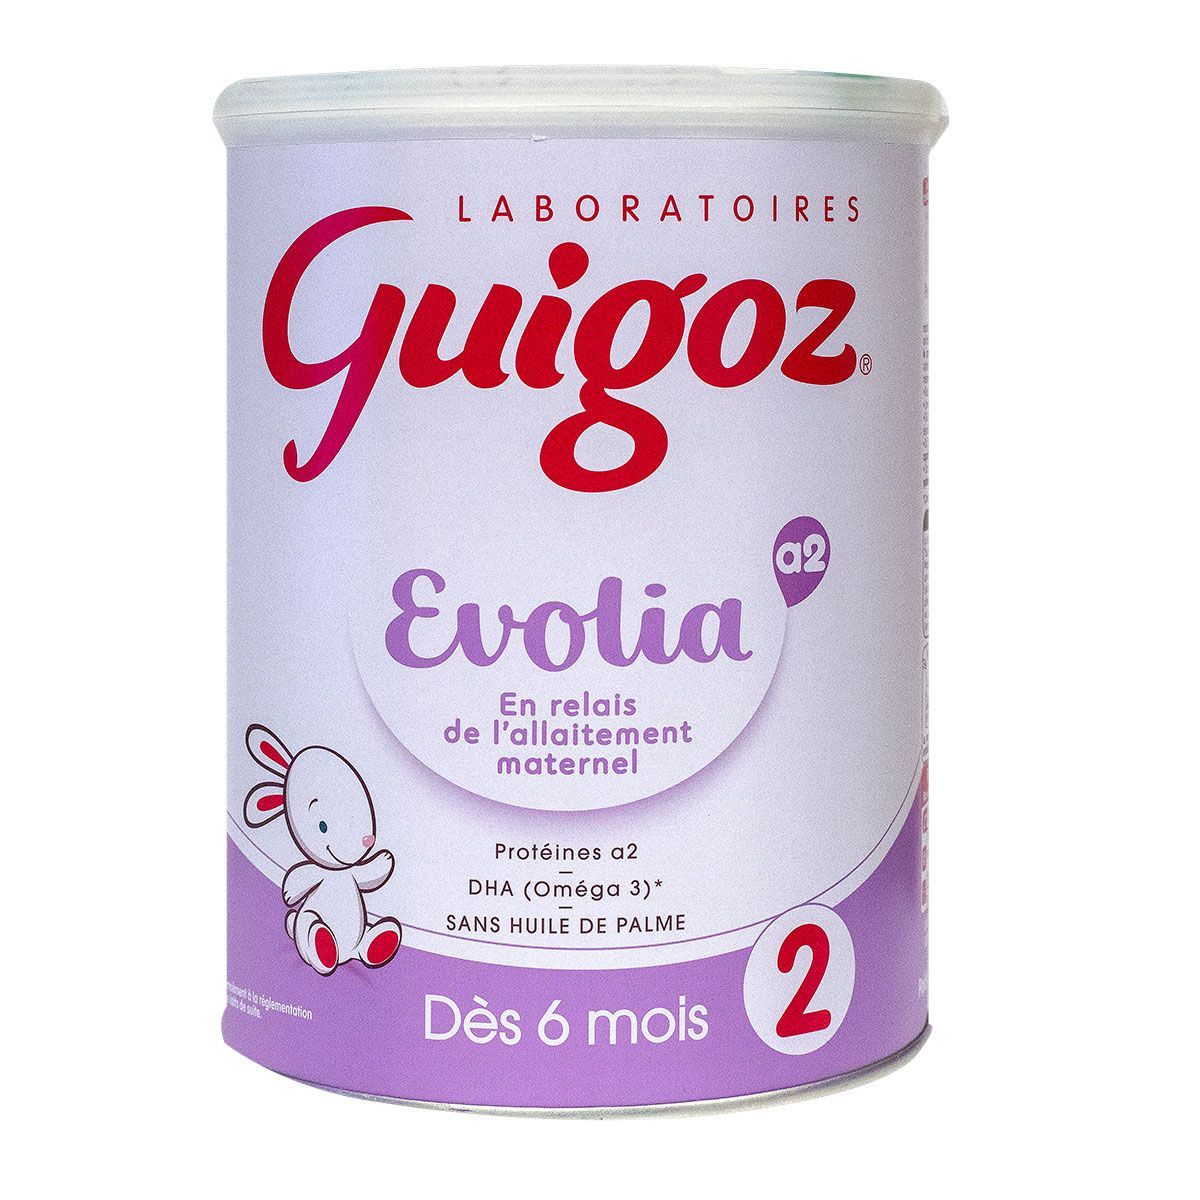 Guigoz 2 Evolia A2 Relais Poudre 800g